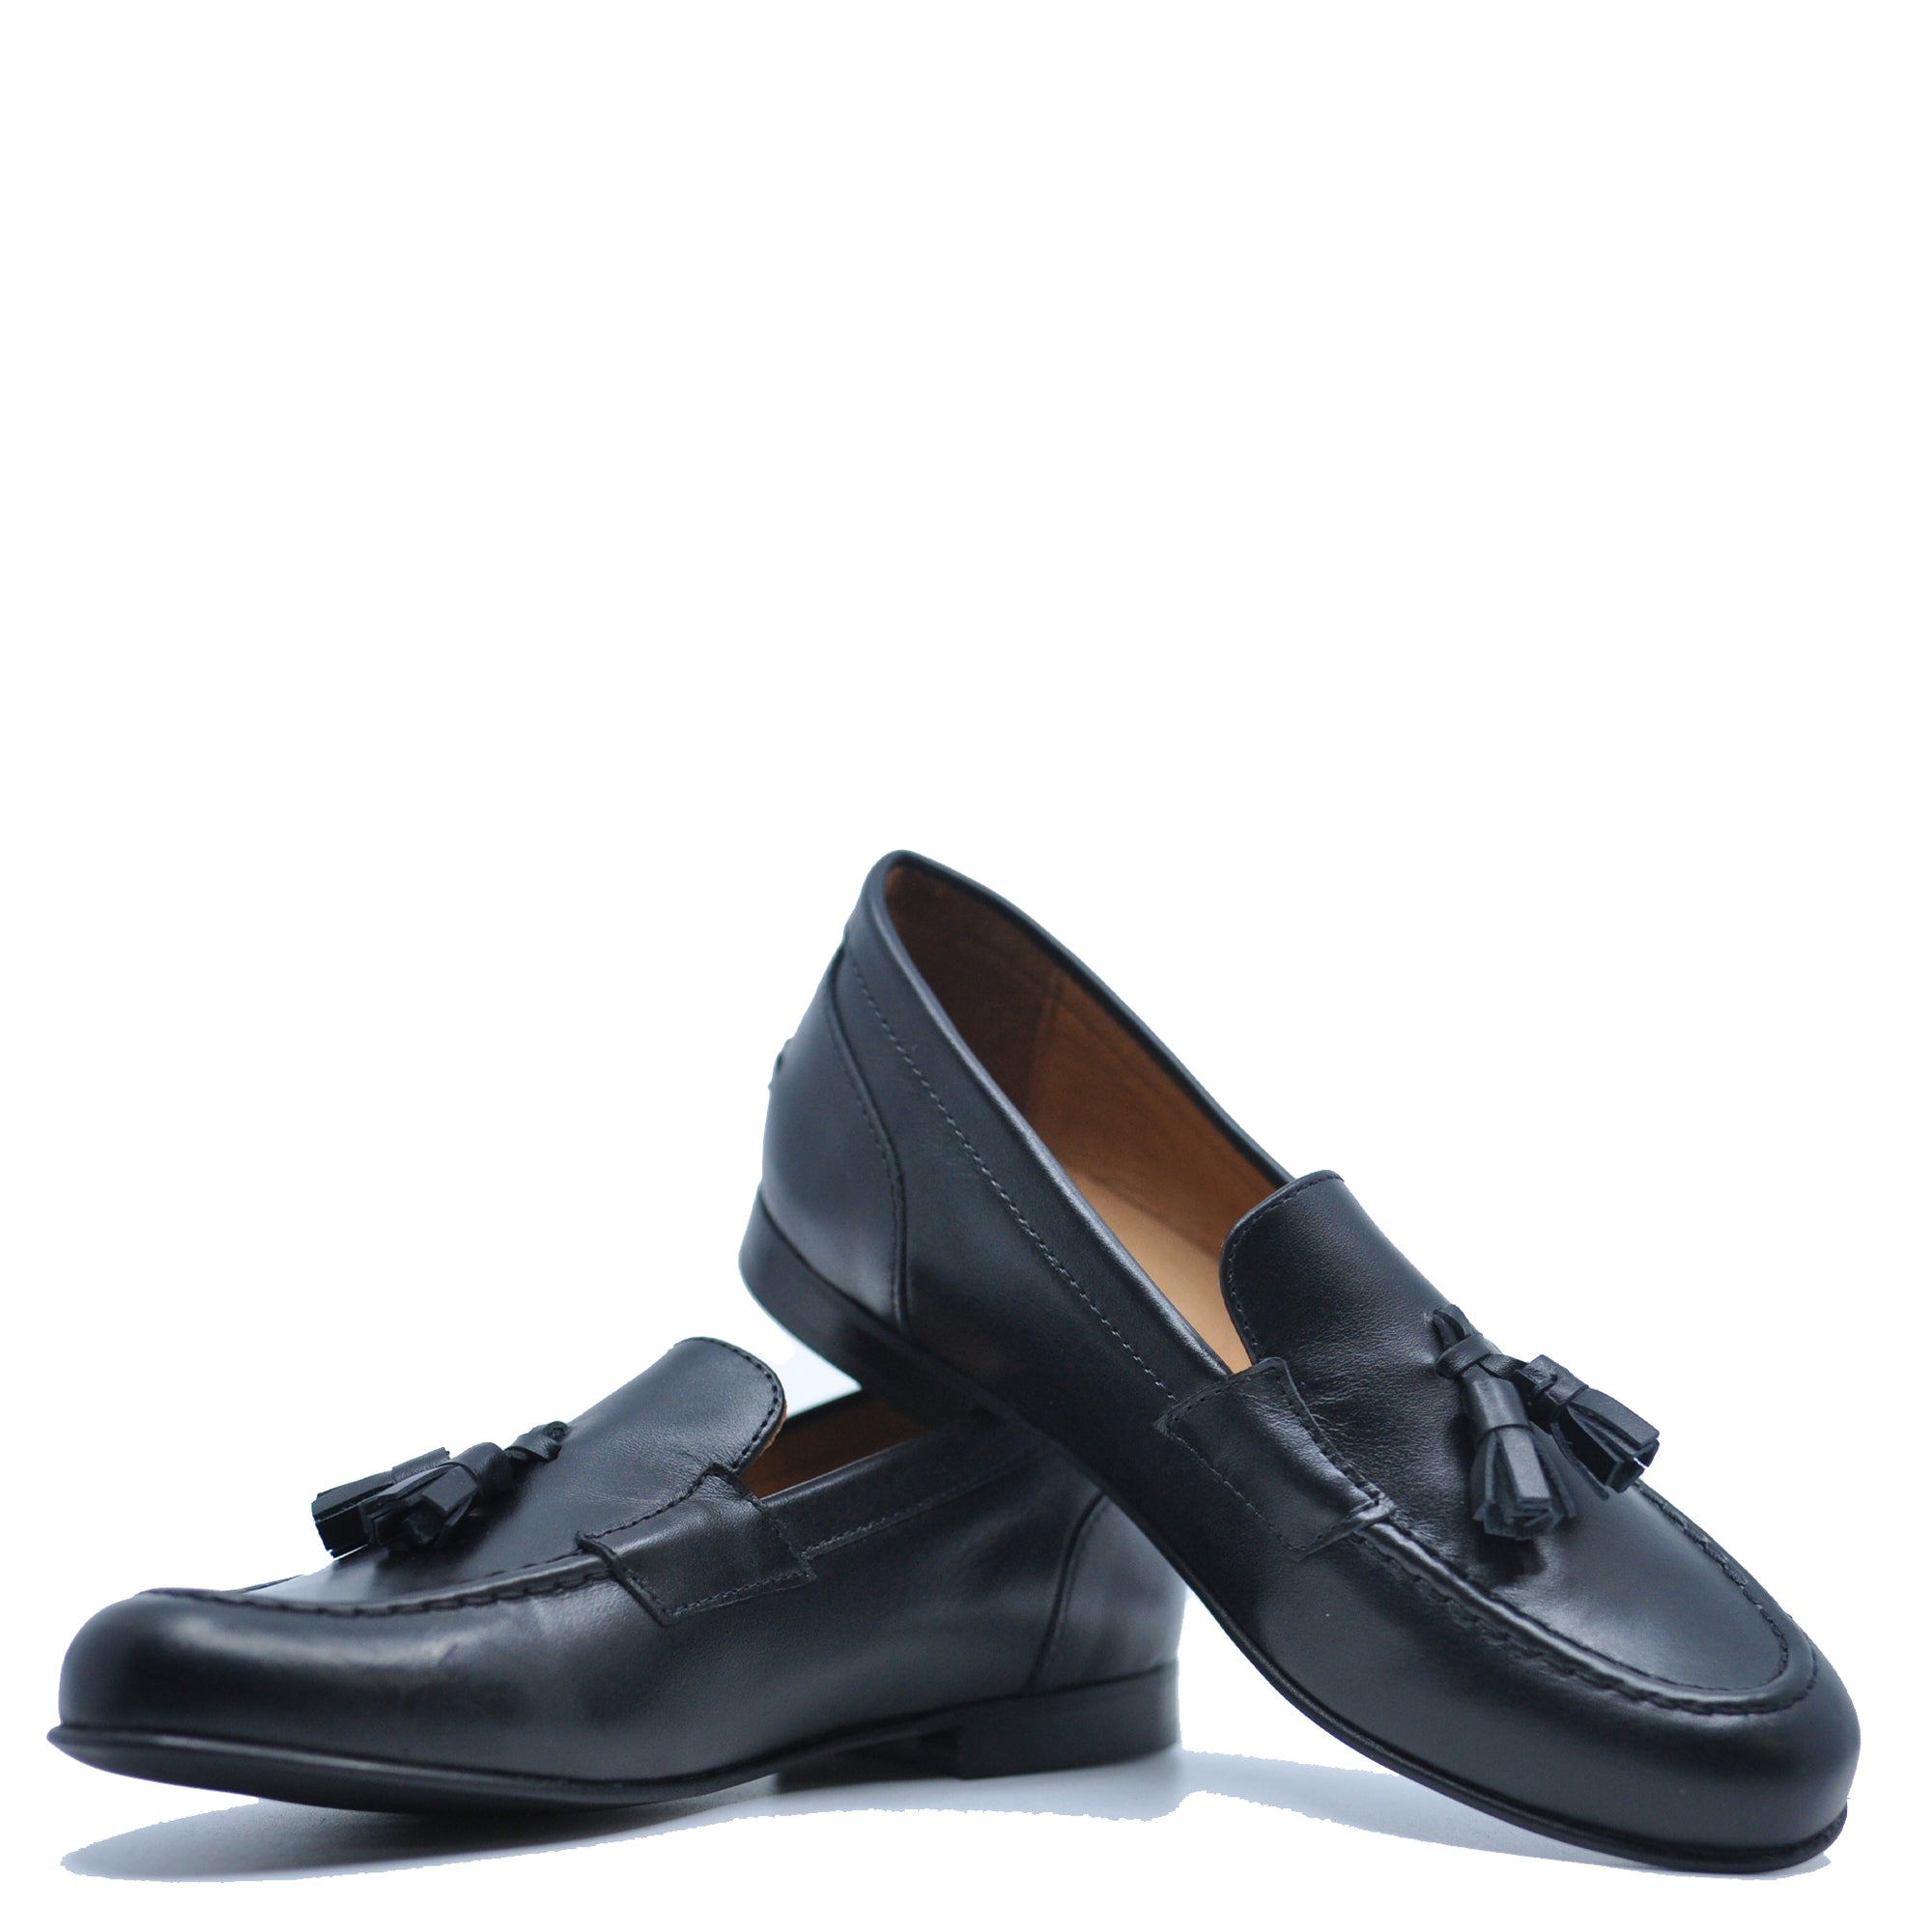 Atlanta Mocassin Black Tassel Dress Shoe-Tassel Children Shoes